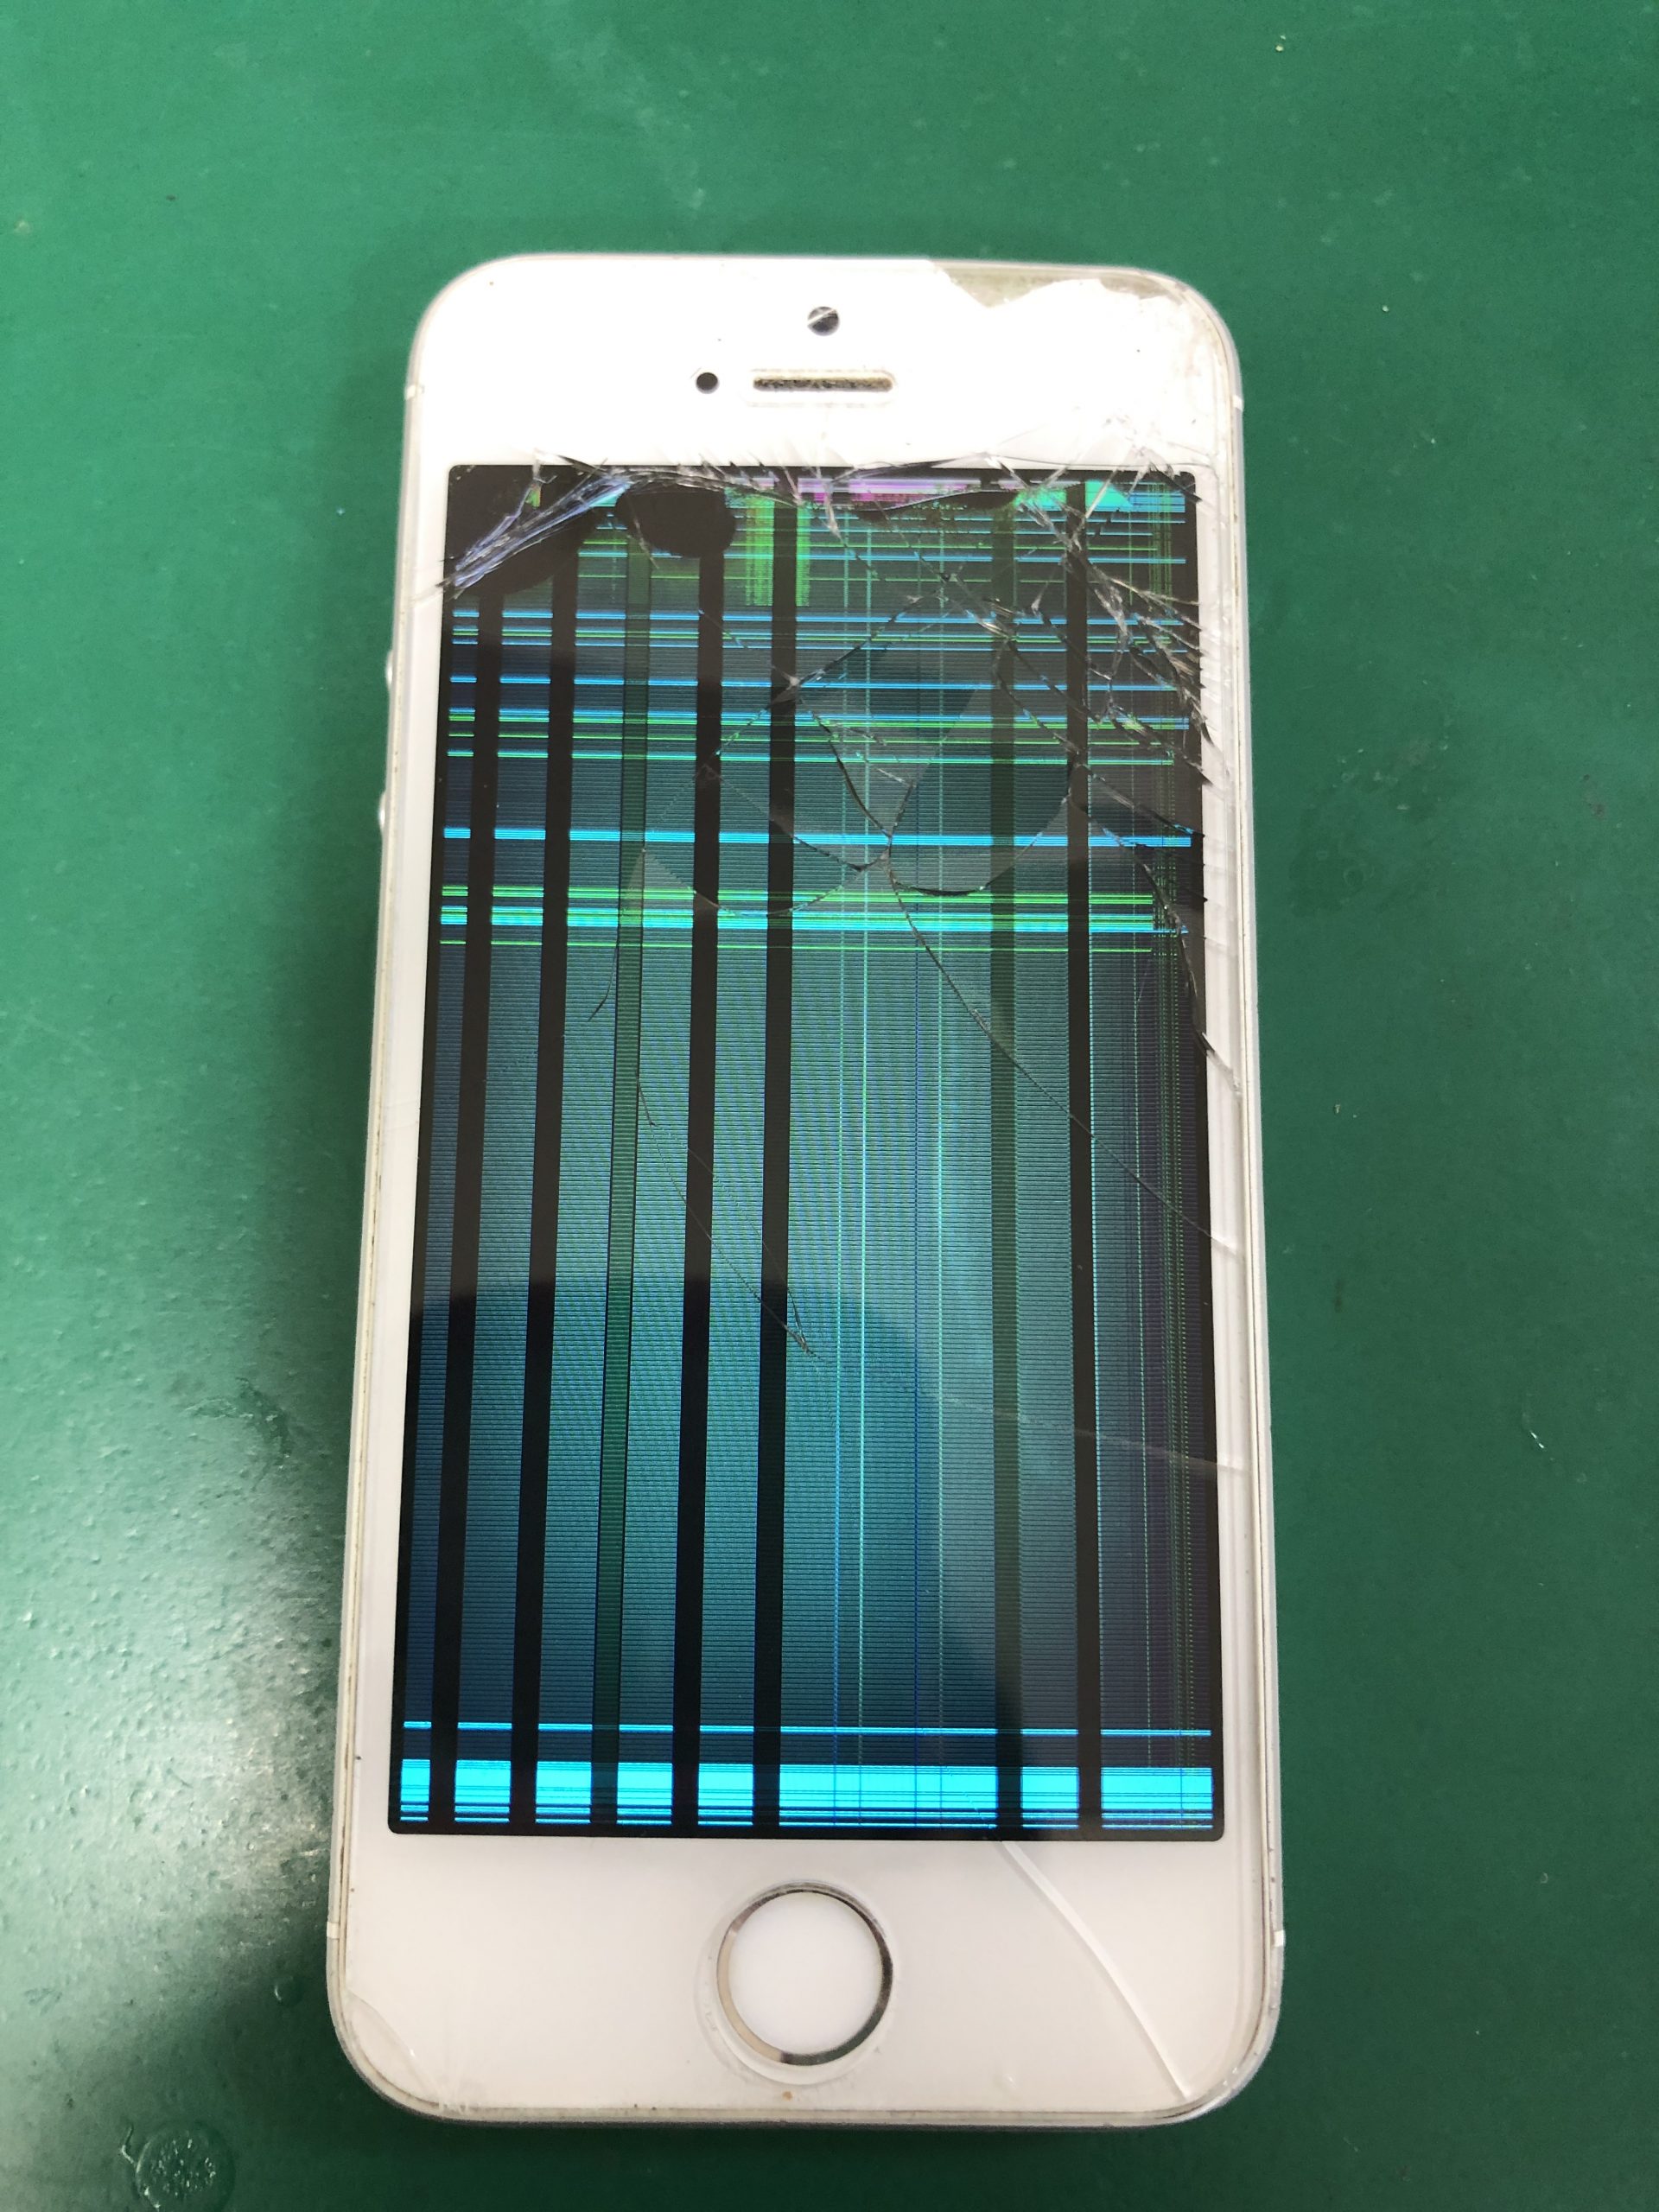 iPhoneの画面に縦線が入る。 | iPhone修理、画面割れ、バッテリー交換はの料金をご確認ください。スタイルマートです